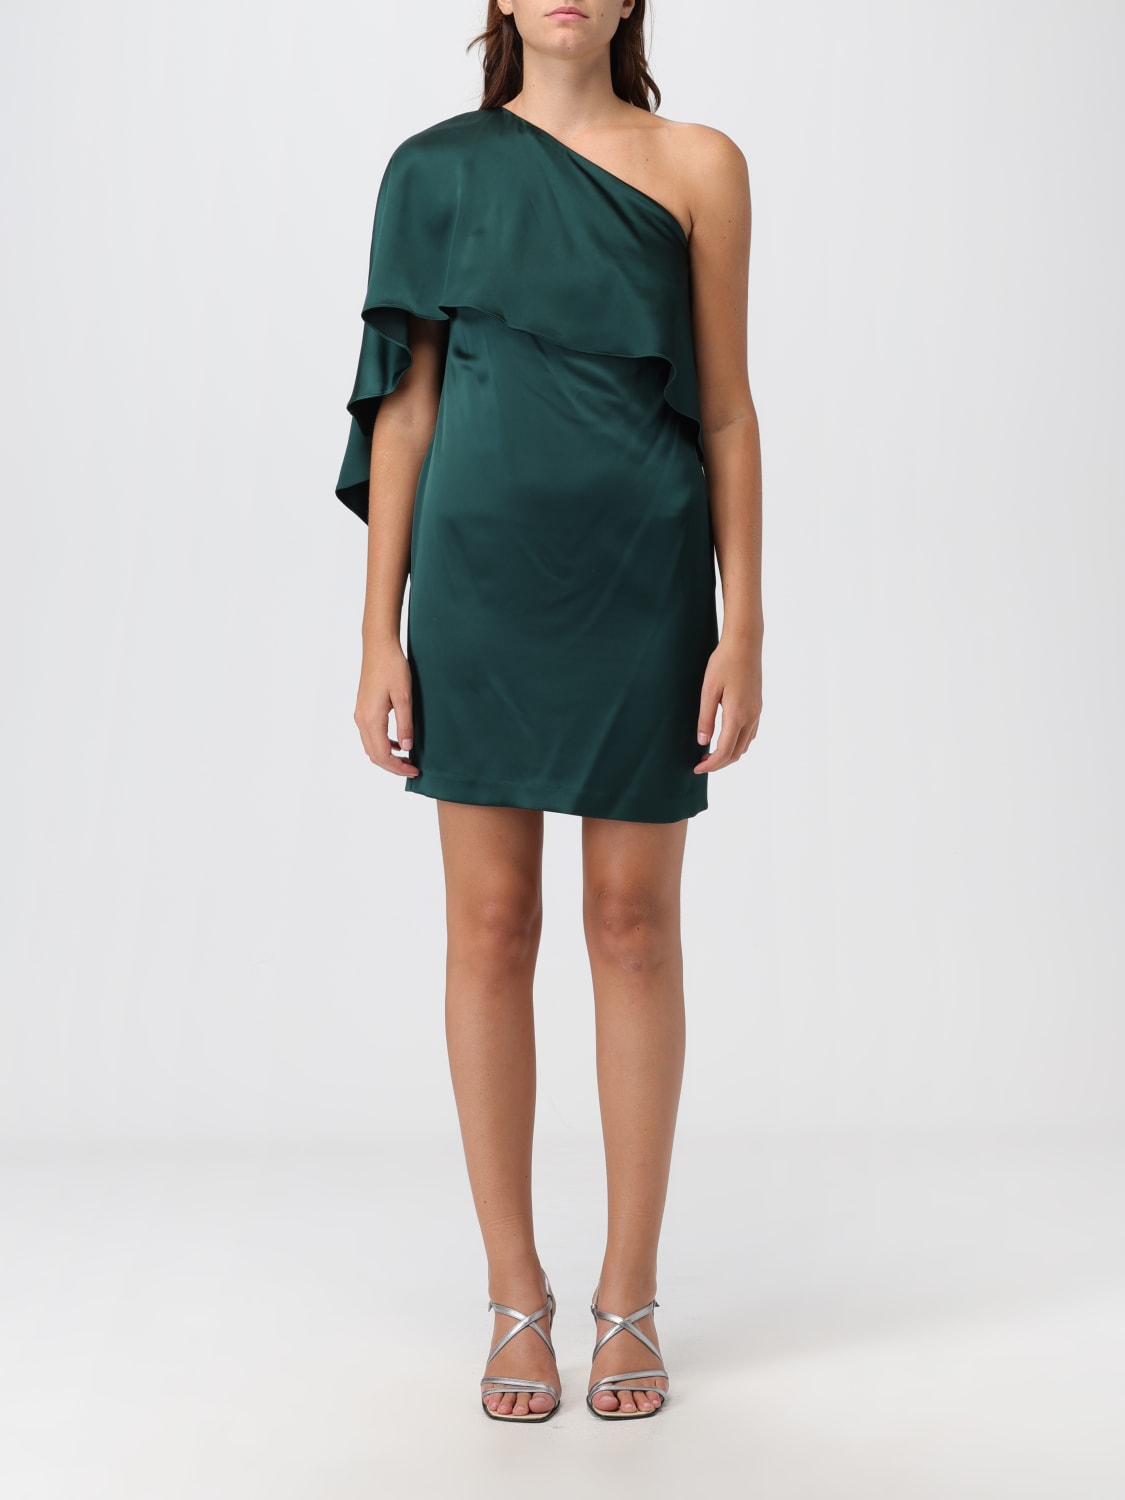 LAUREN RALPH LAUREN: Dress woman - Green  LAUREN RALPH LAUREN dress  253918413 online at